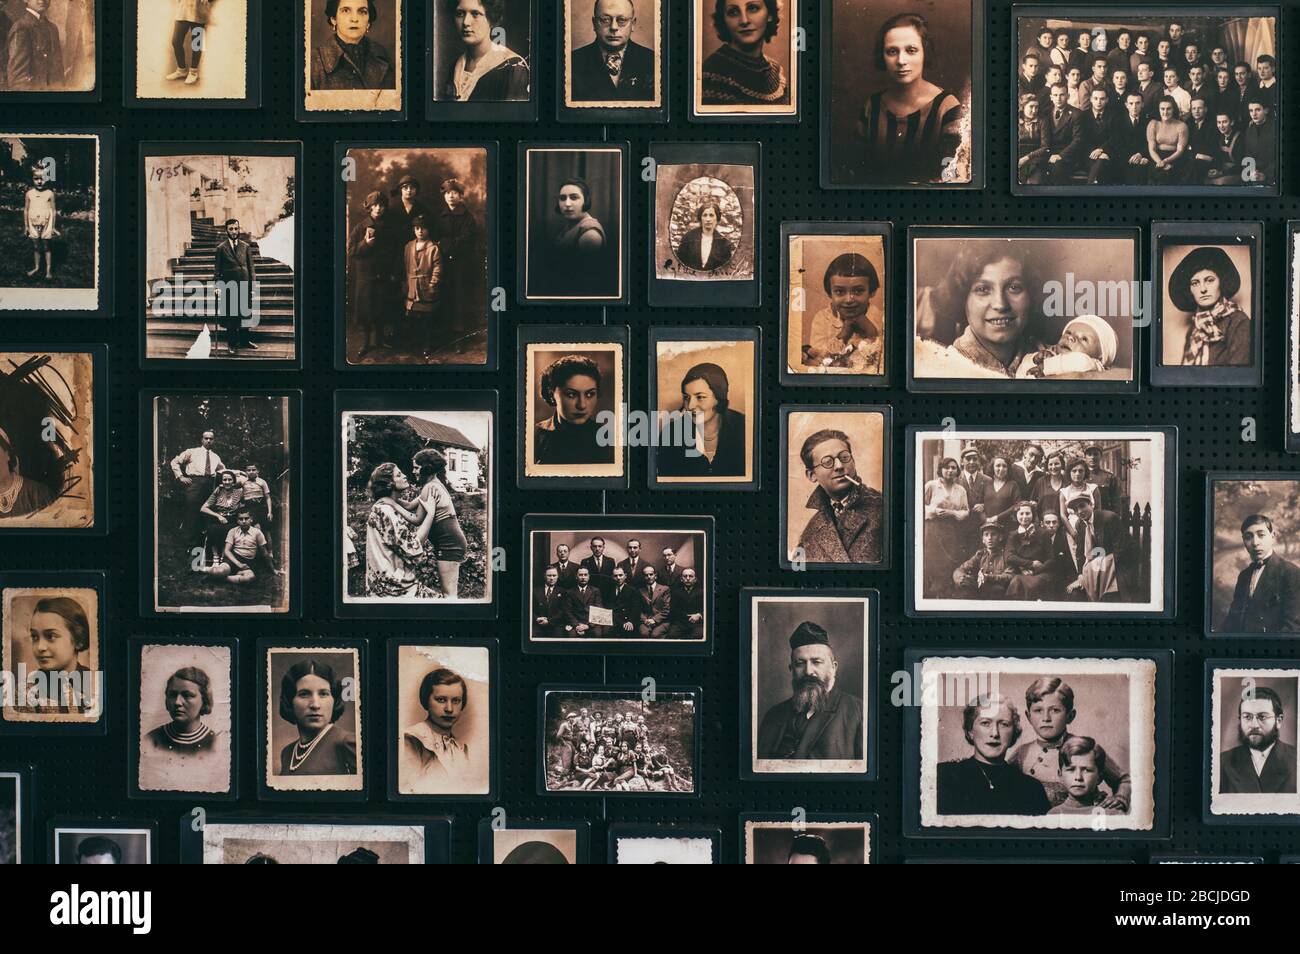 Foto der Häftlinge von Auschwitz - Konzentrationslager Birkenau in der Nähe von Krakow, Polen Stockfoto